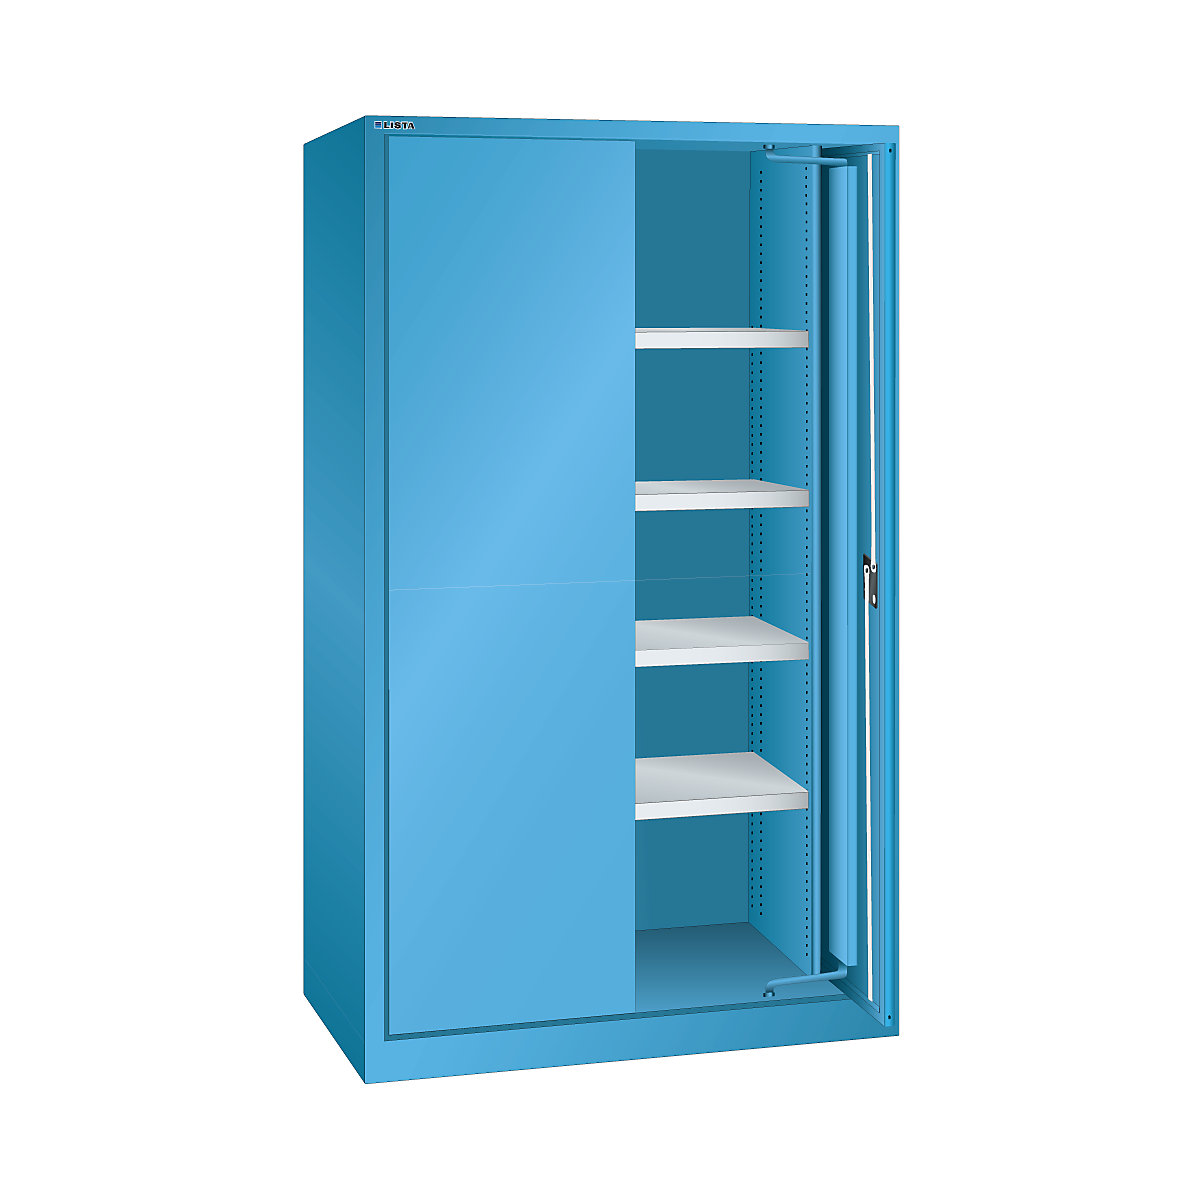 Heavy duty flush door cupboard – LISTA, 4 shelves, with solid panel doors, light blue-8